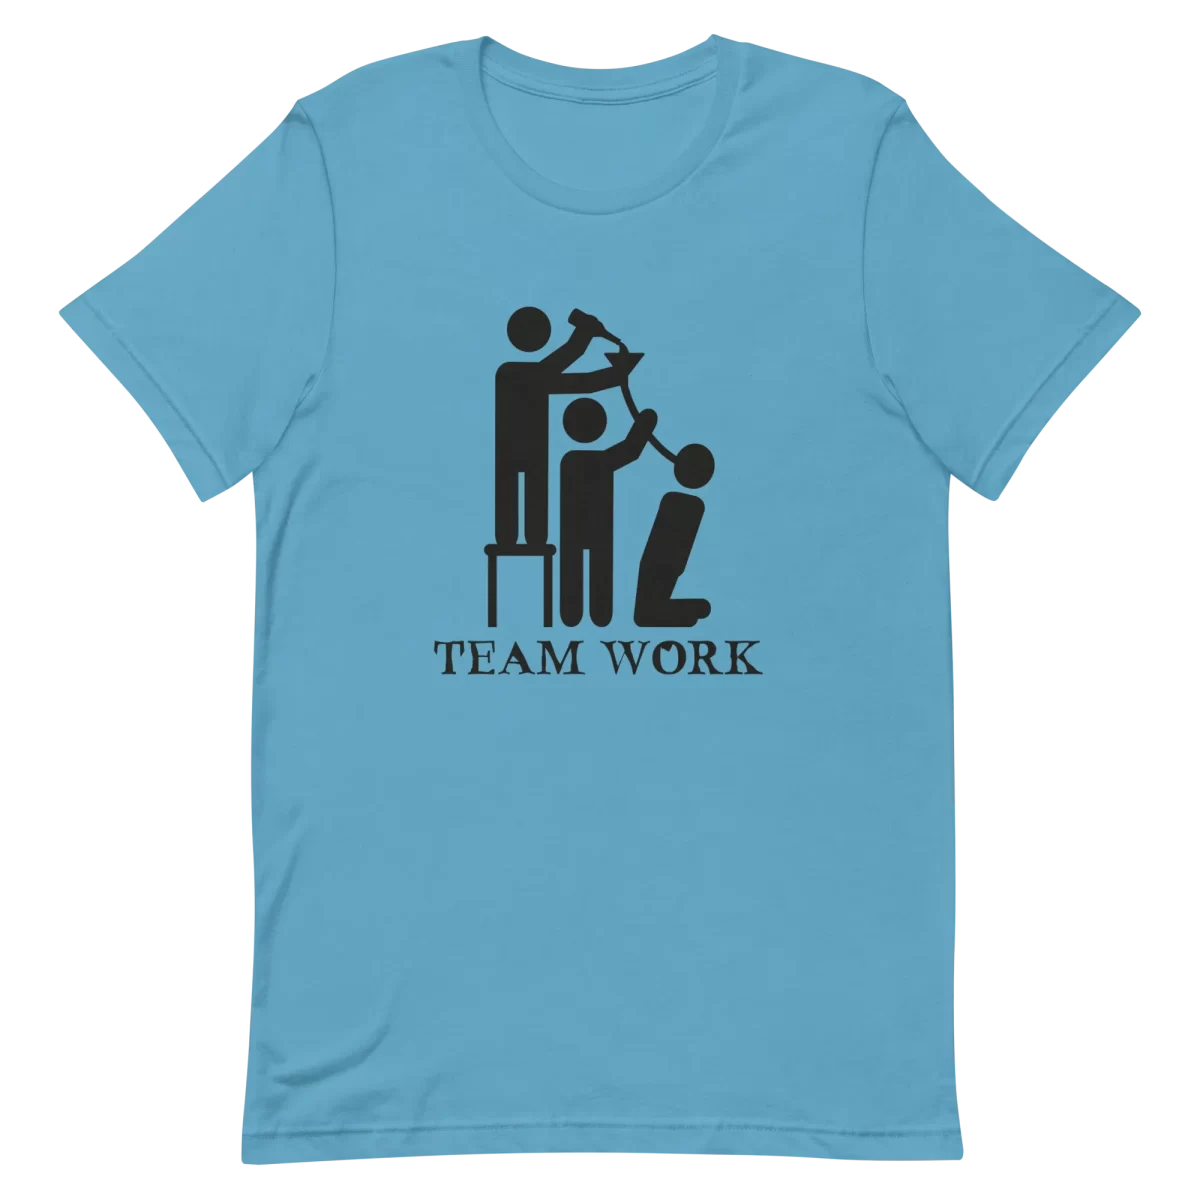 Unisex T-Shirt - Team Work - Ocean Blue